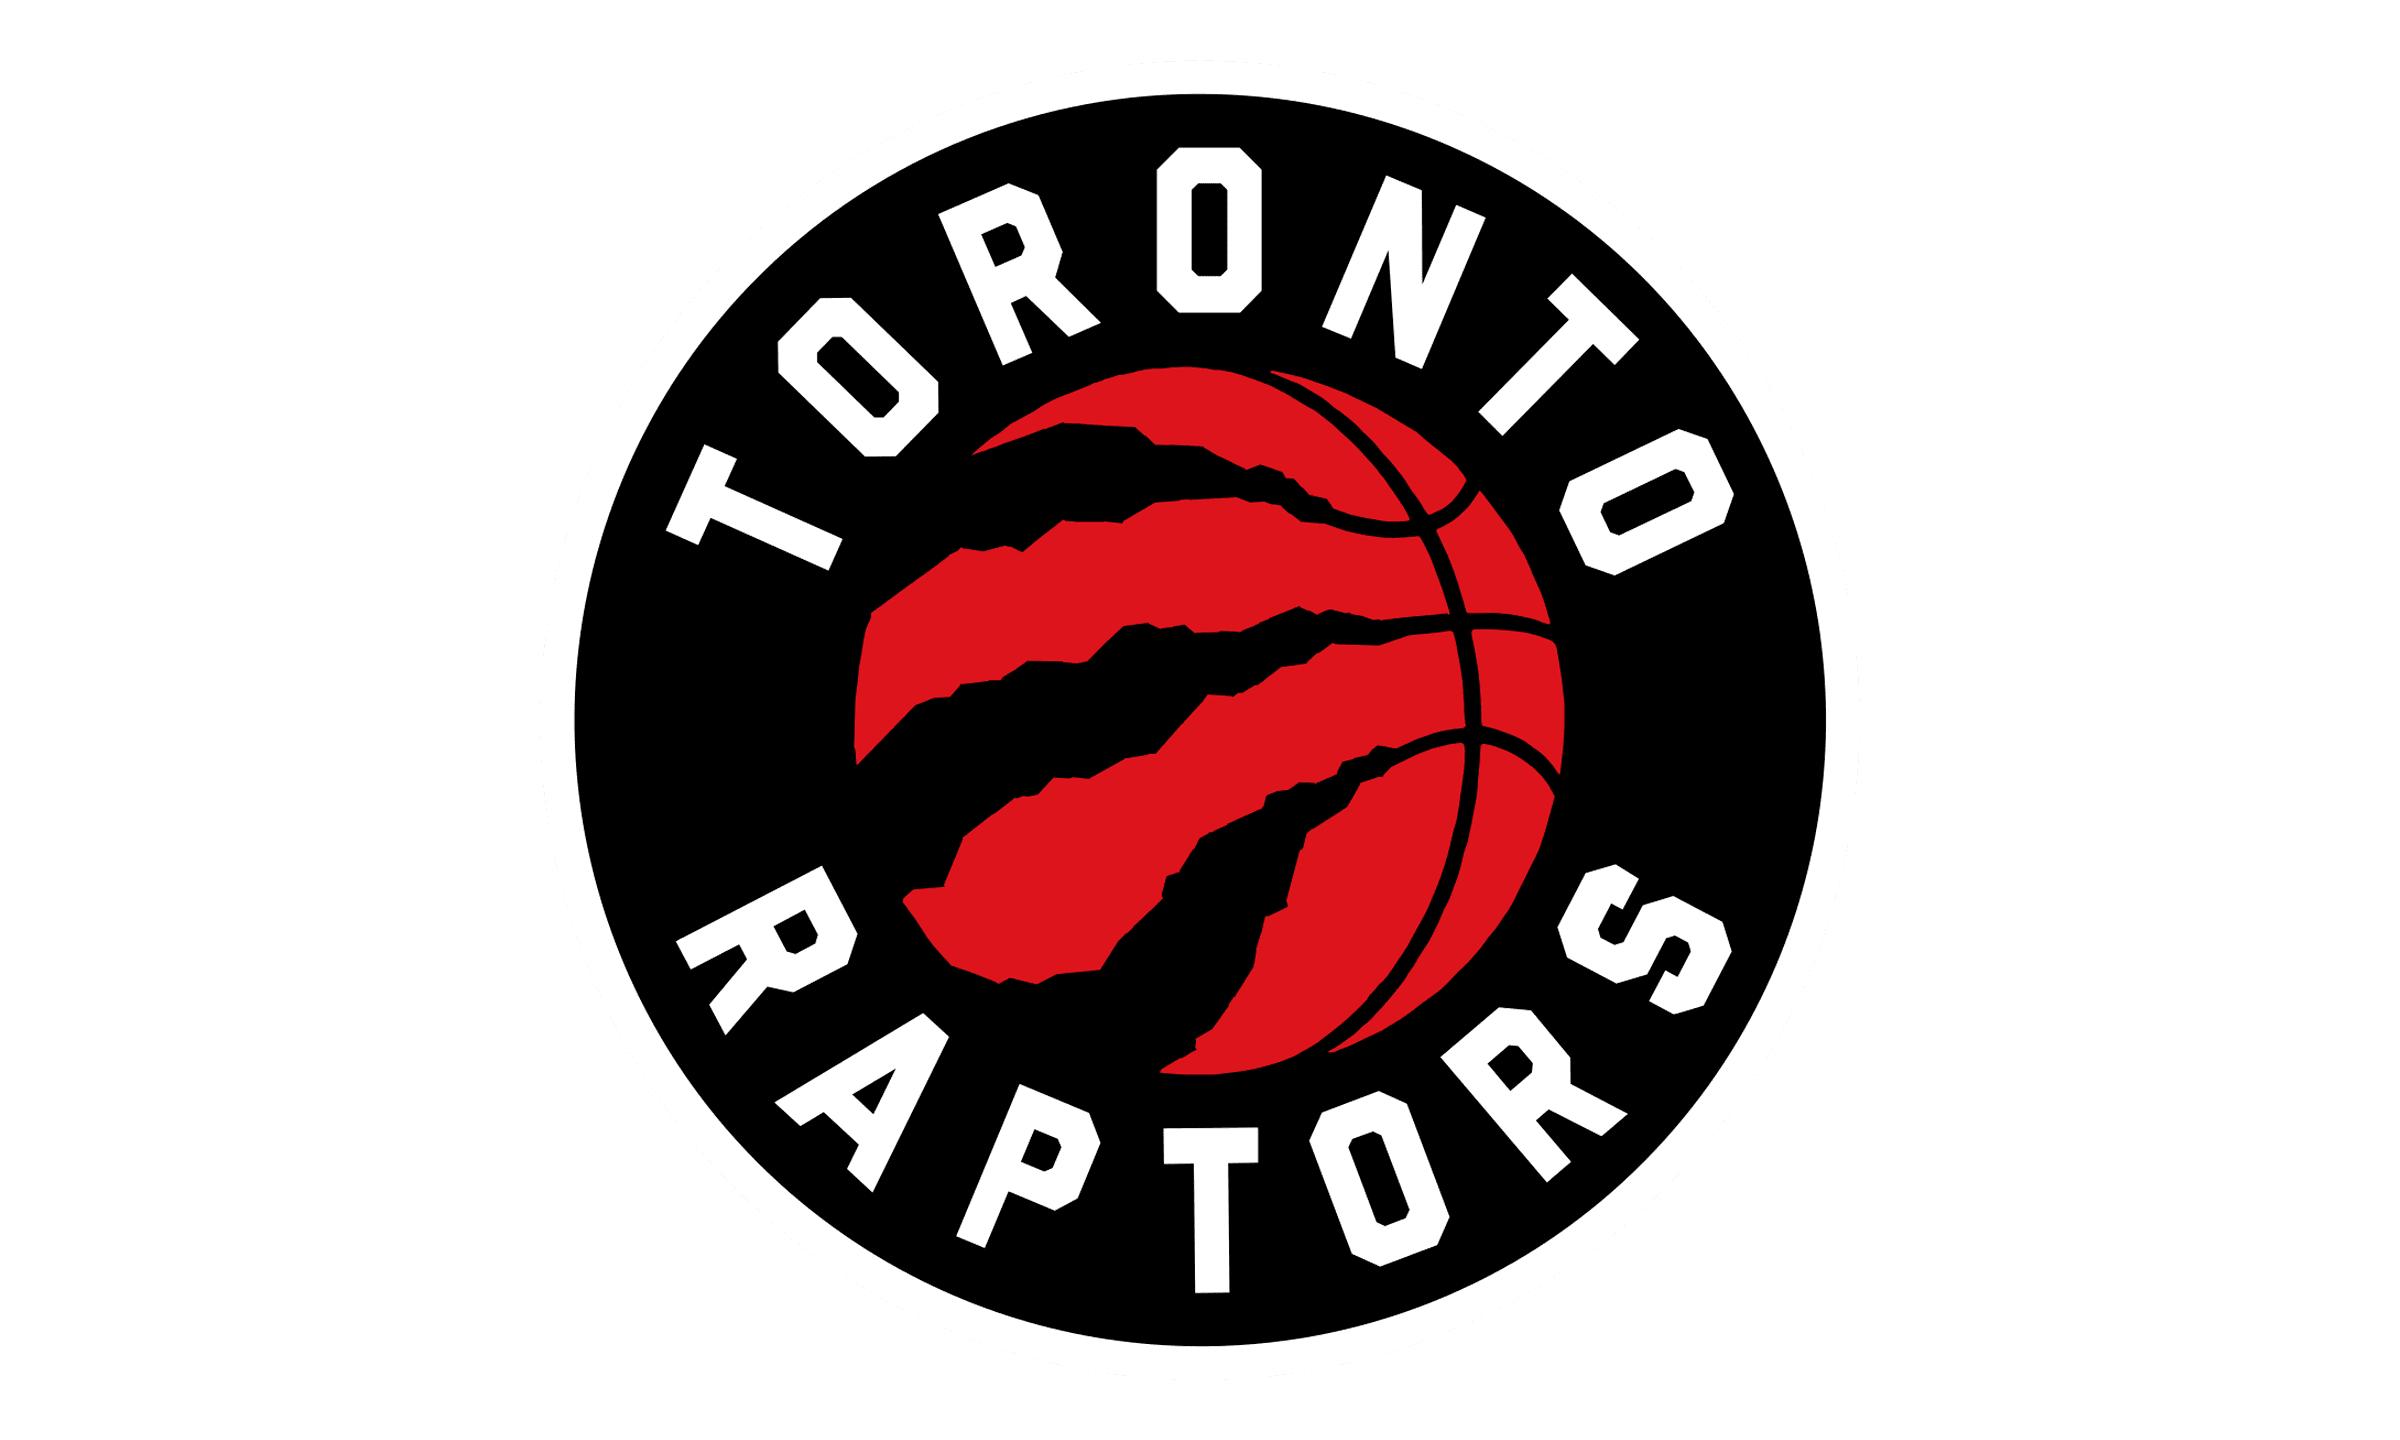 Toronto Raptors Logo - símbolo, significado logotipo, historia, PNG